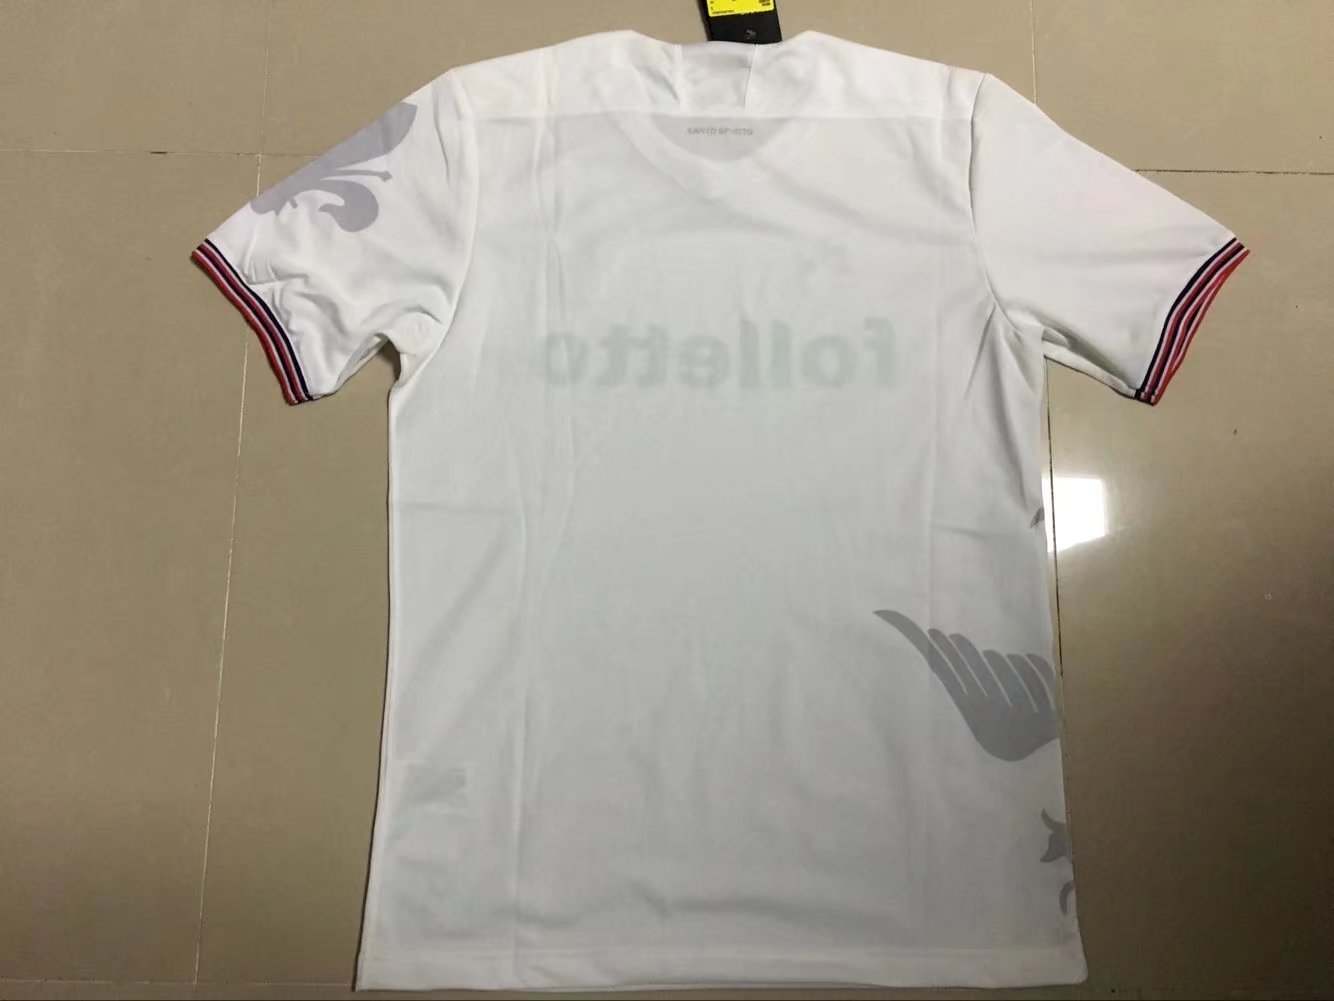 Fiorentina Away 2017/18 Soccer Jersey Shirt - Click Image to Close